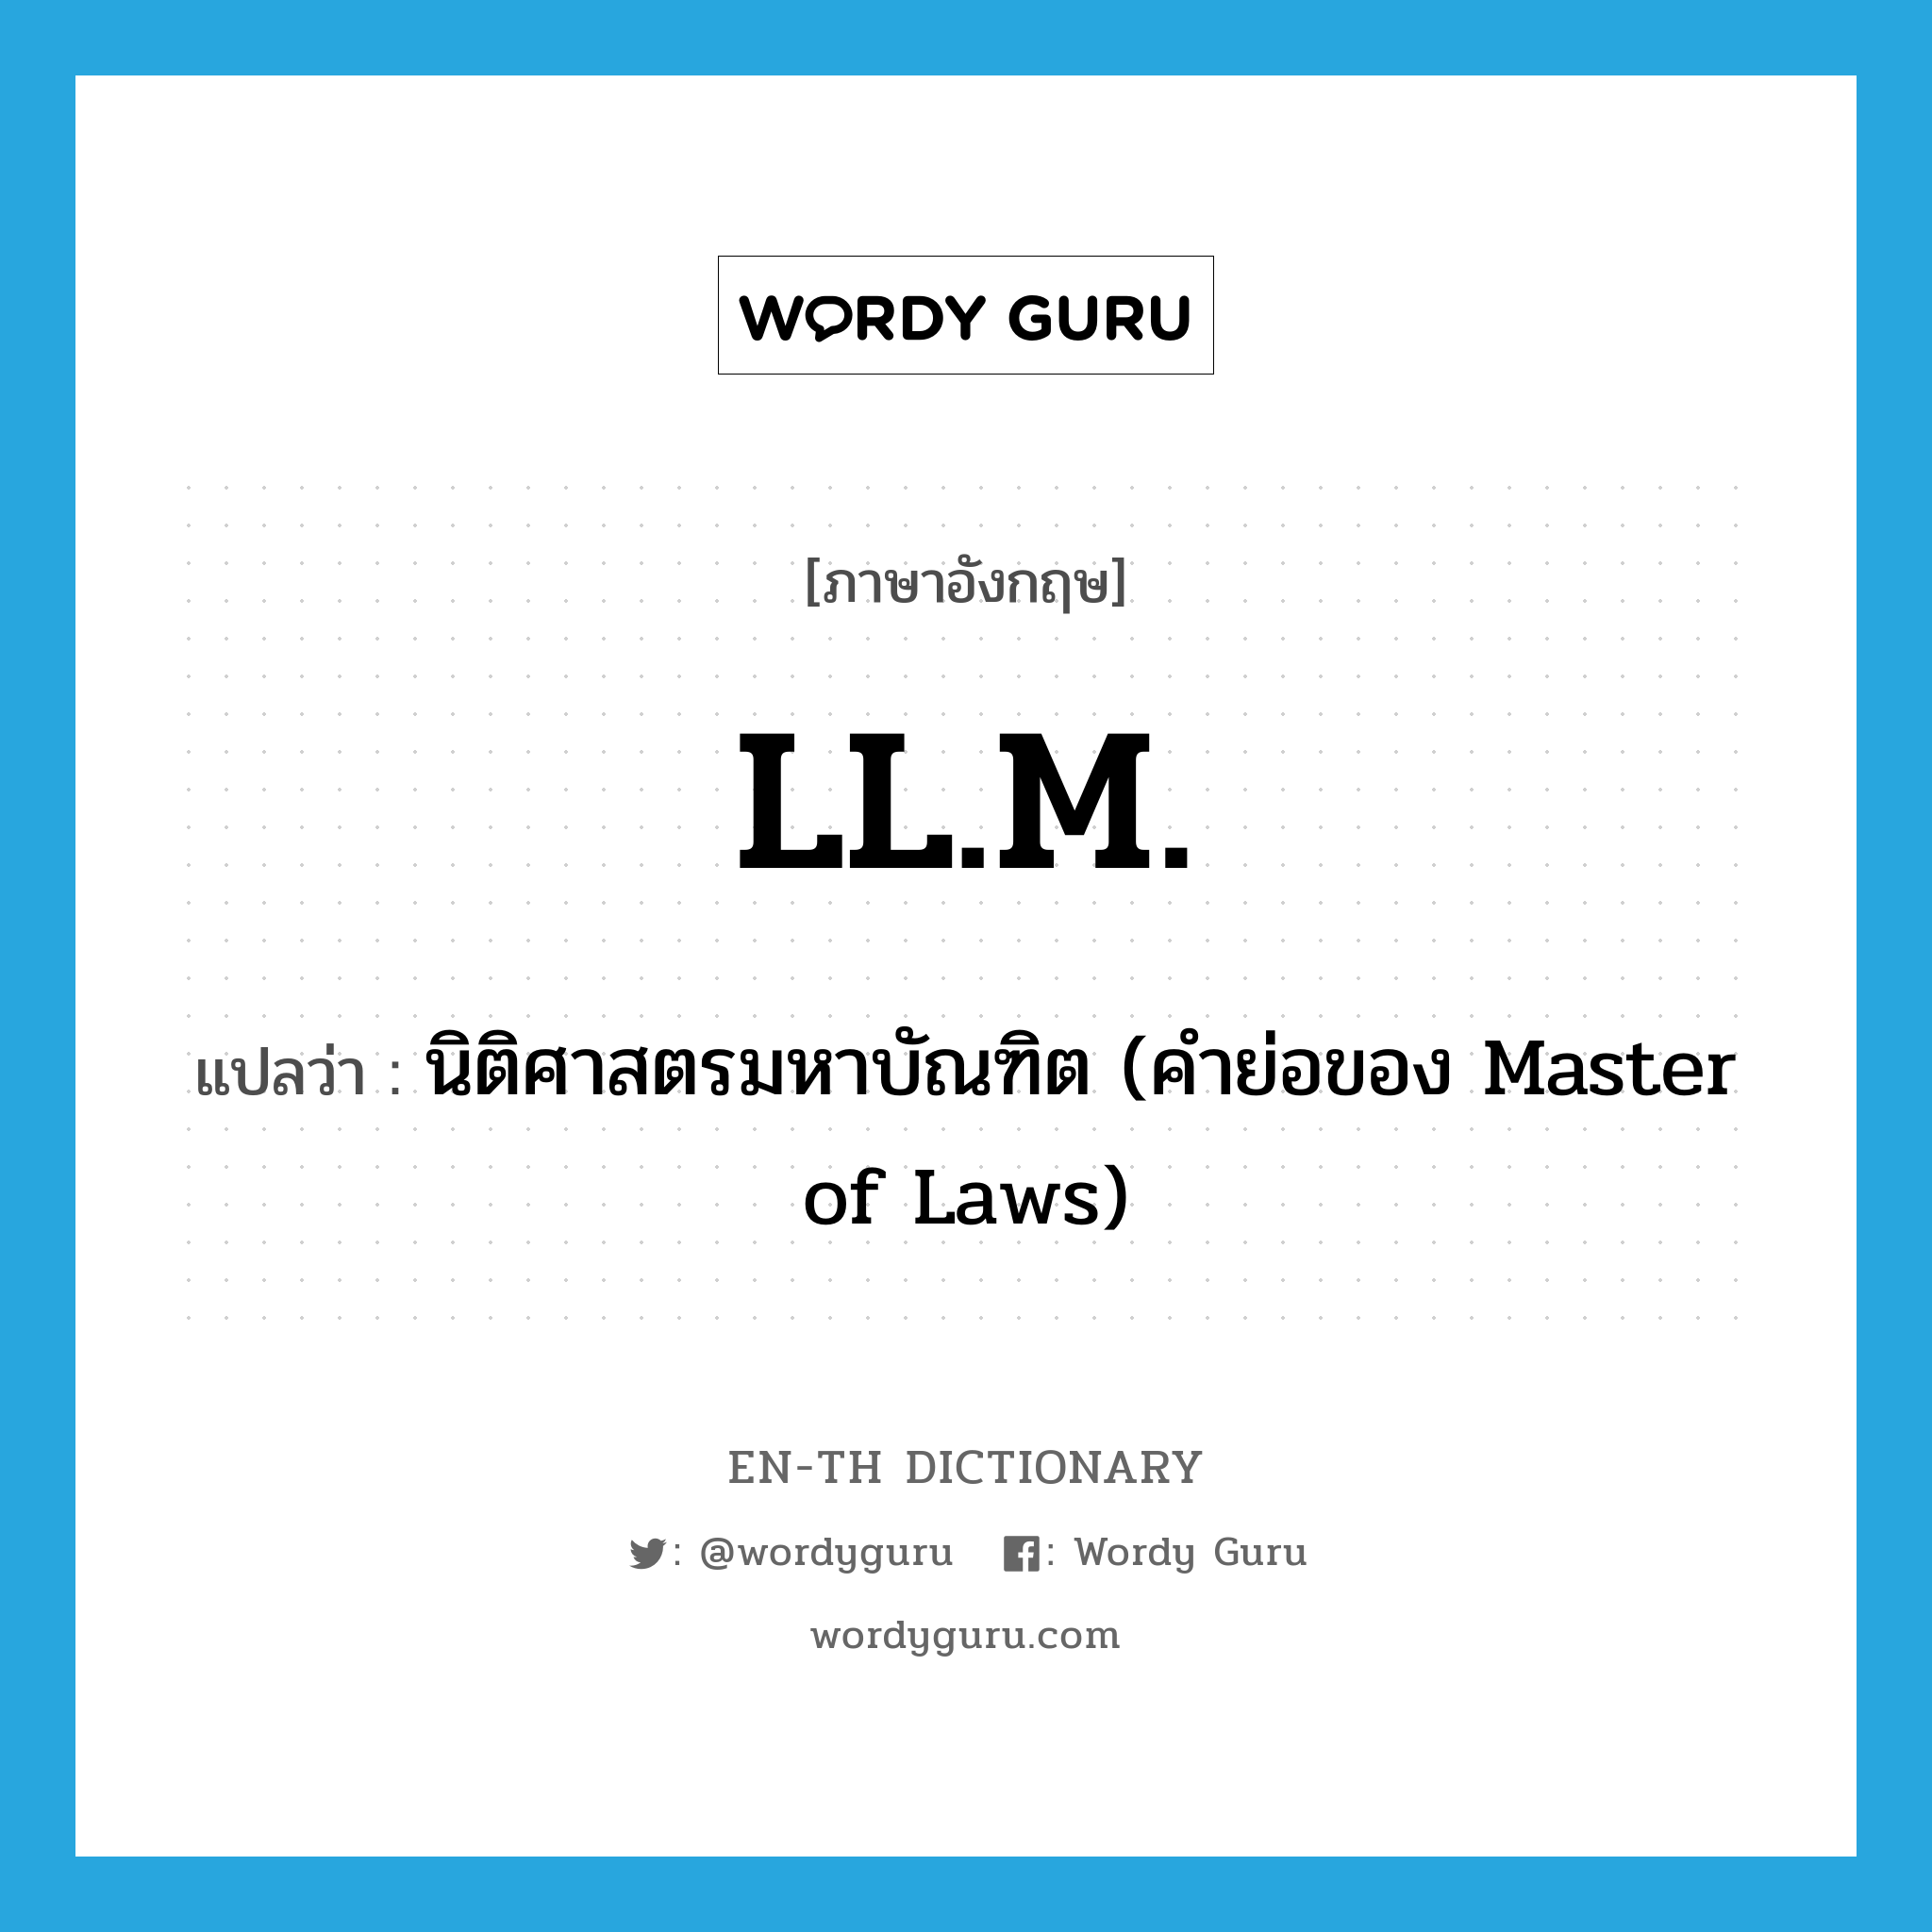 นิติศาสตรมหาบัณฑิต (คำย่อของ Master of Laws) ภาษาอังกฤษ?, คำศัพท์ภาษาอังกฤษ นิติศาสตรมหาบัณฑิต (คำย่อของ Master of Laws) แปลว่า LL.M. ประเภท ABBR หมวด ABBR